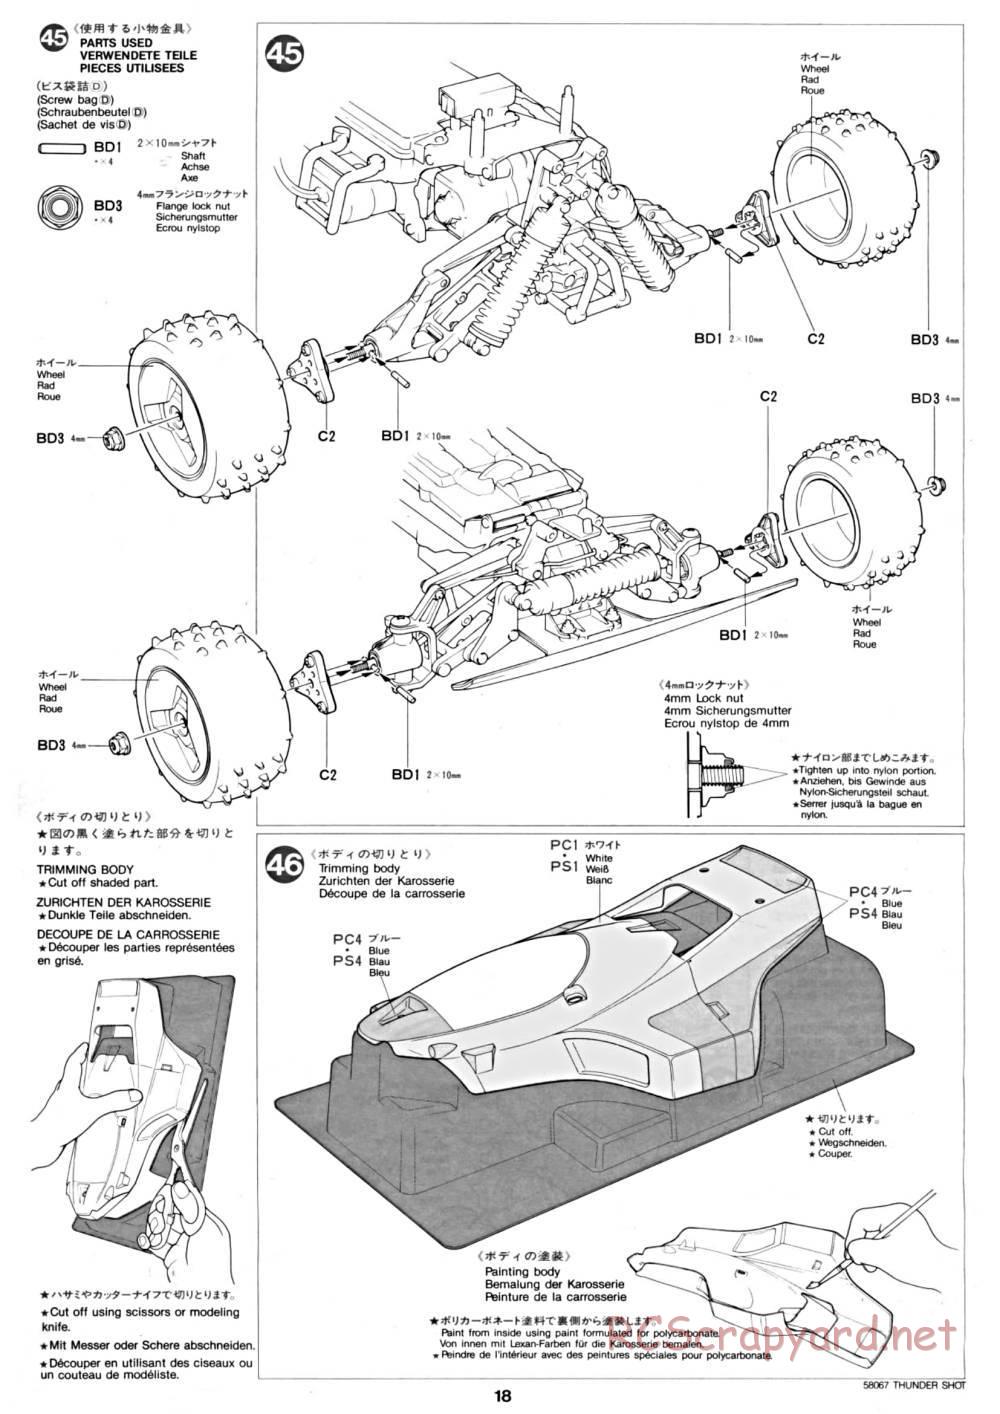 Tamiya - Thunder Shot - 58067 - Manual - Page 18